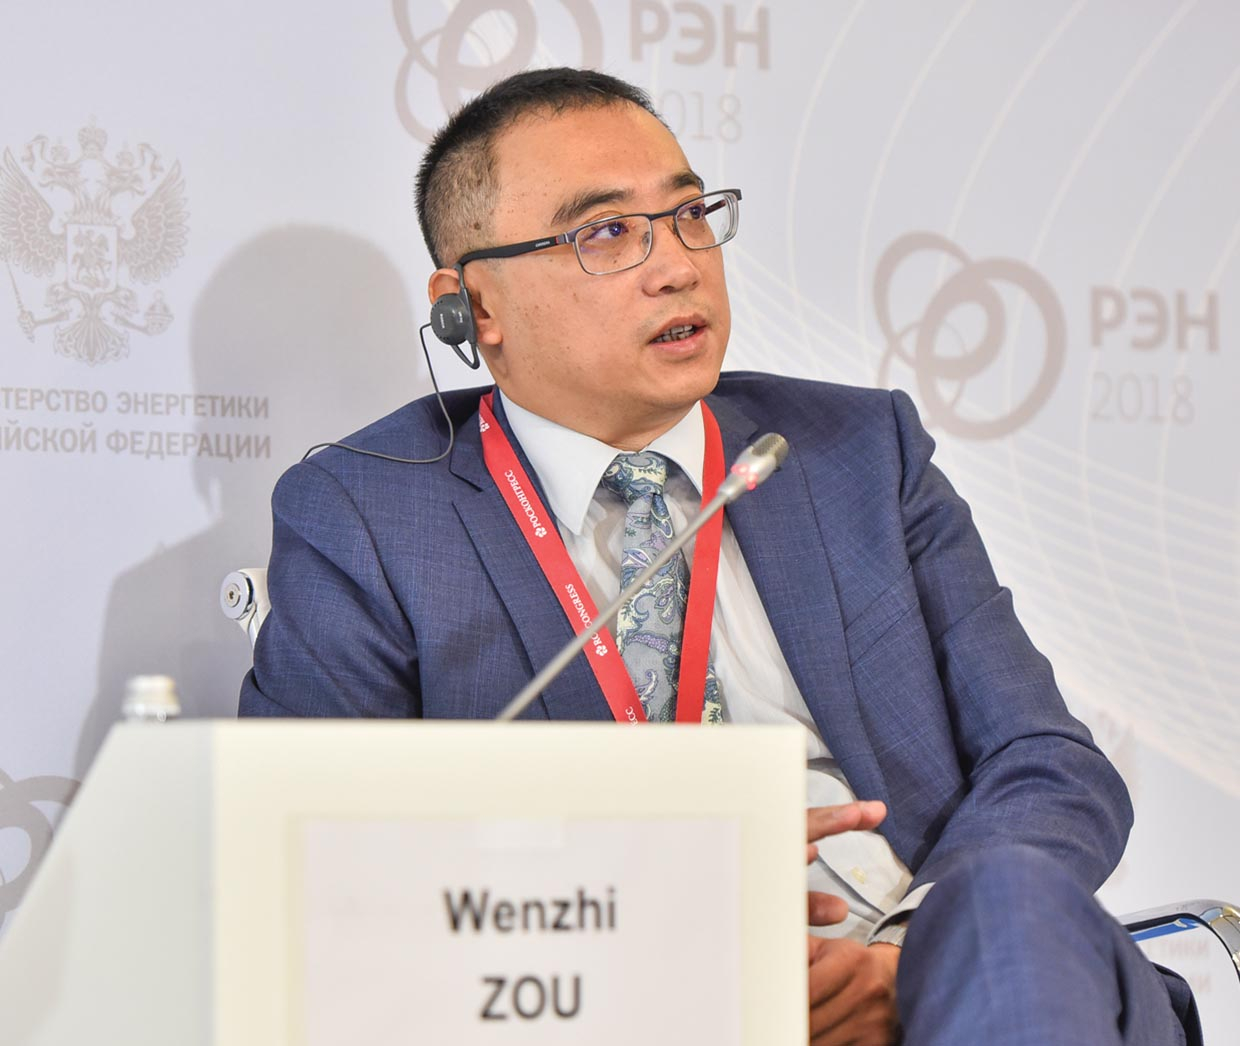 Зоу Венжи, заместитель генерального директора, управление международных связей, China Petrochemical Corporation (Sinopec Group)